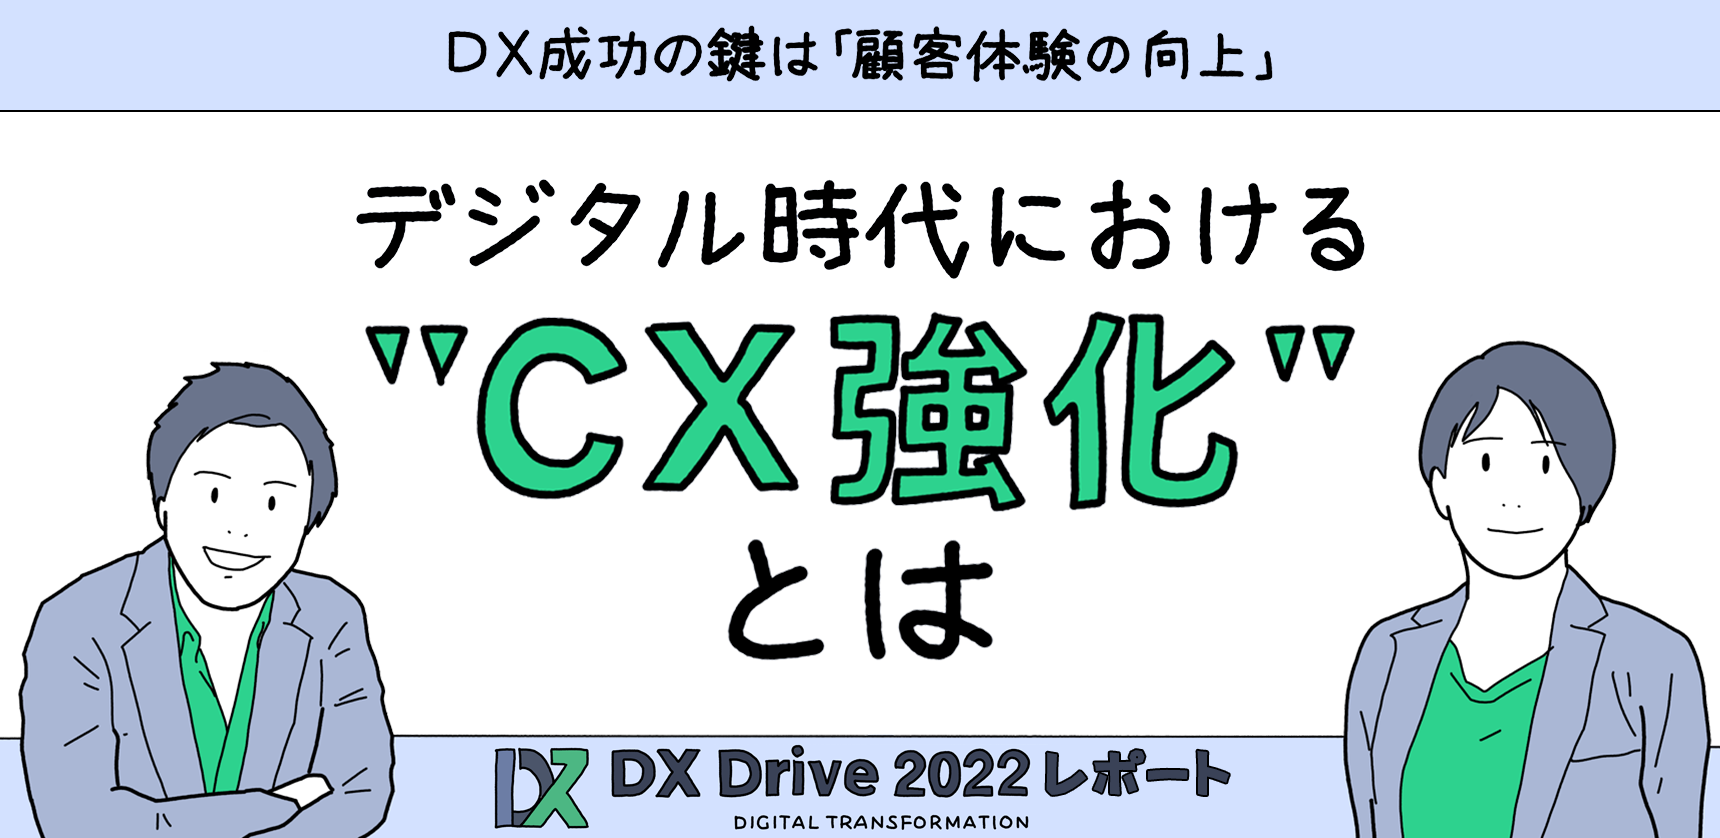 【DX Drive2022レポート】DX成功の鍵は「顧客体験の向上」デジタル時代におけるCX強化とは